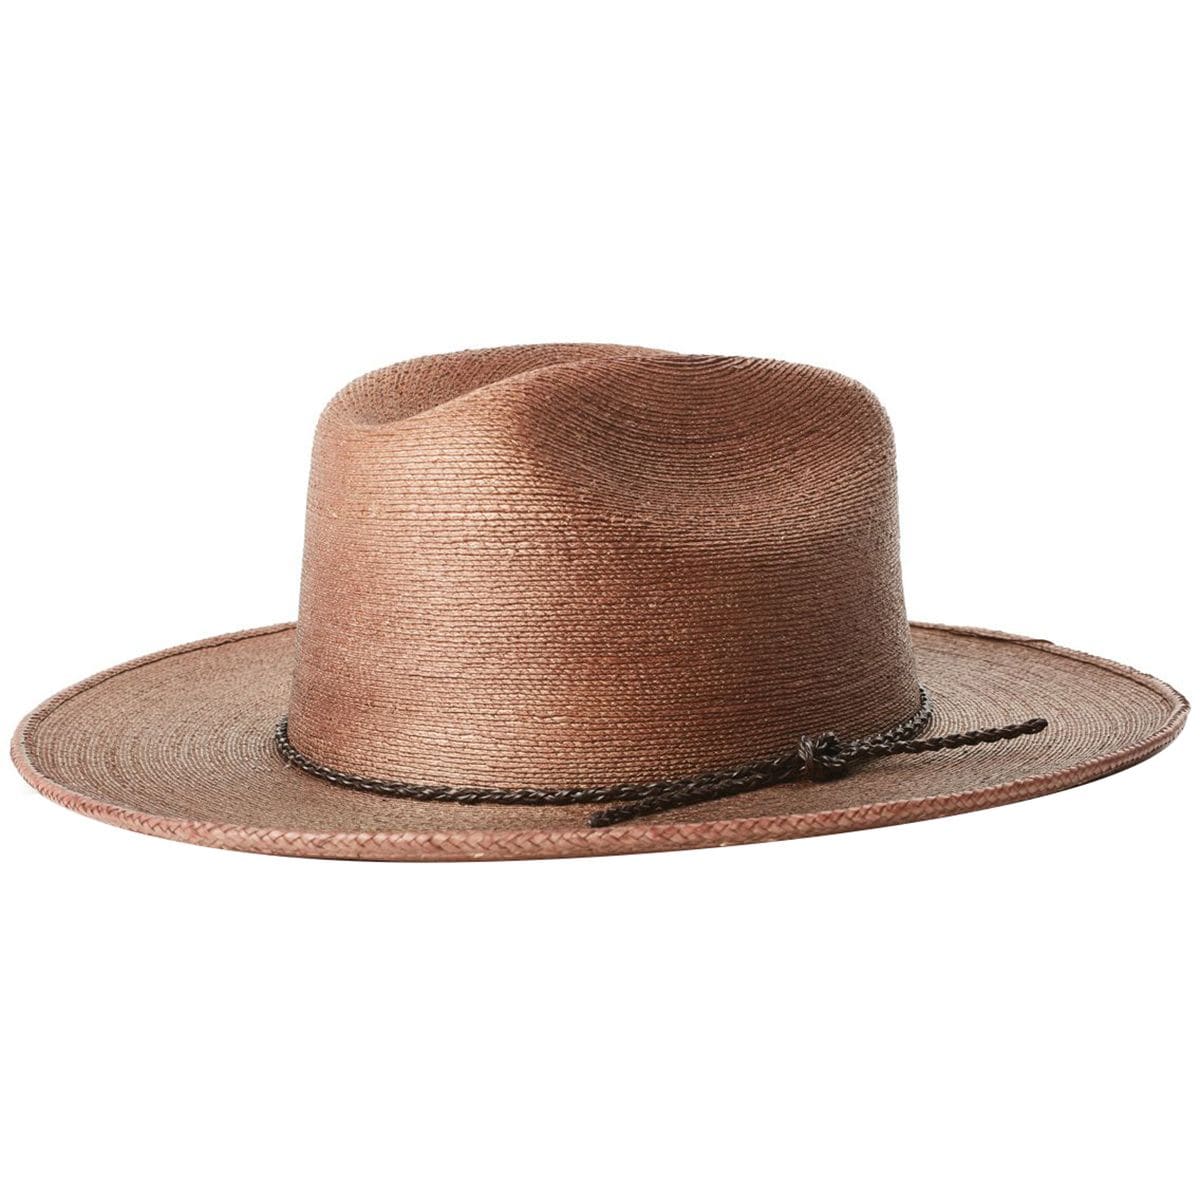 Brixton Vasquez Cowboy Hat - Men